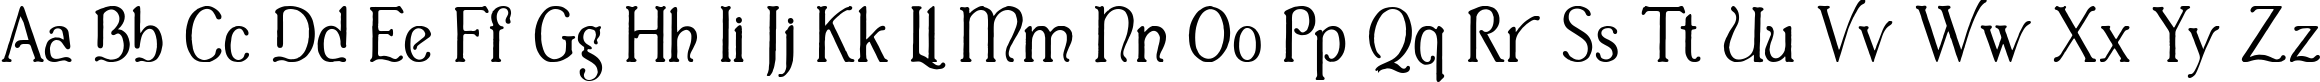 Пример написания английского алфавита шрифтом Casua